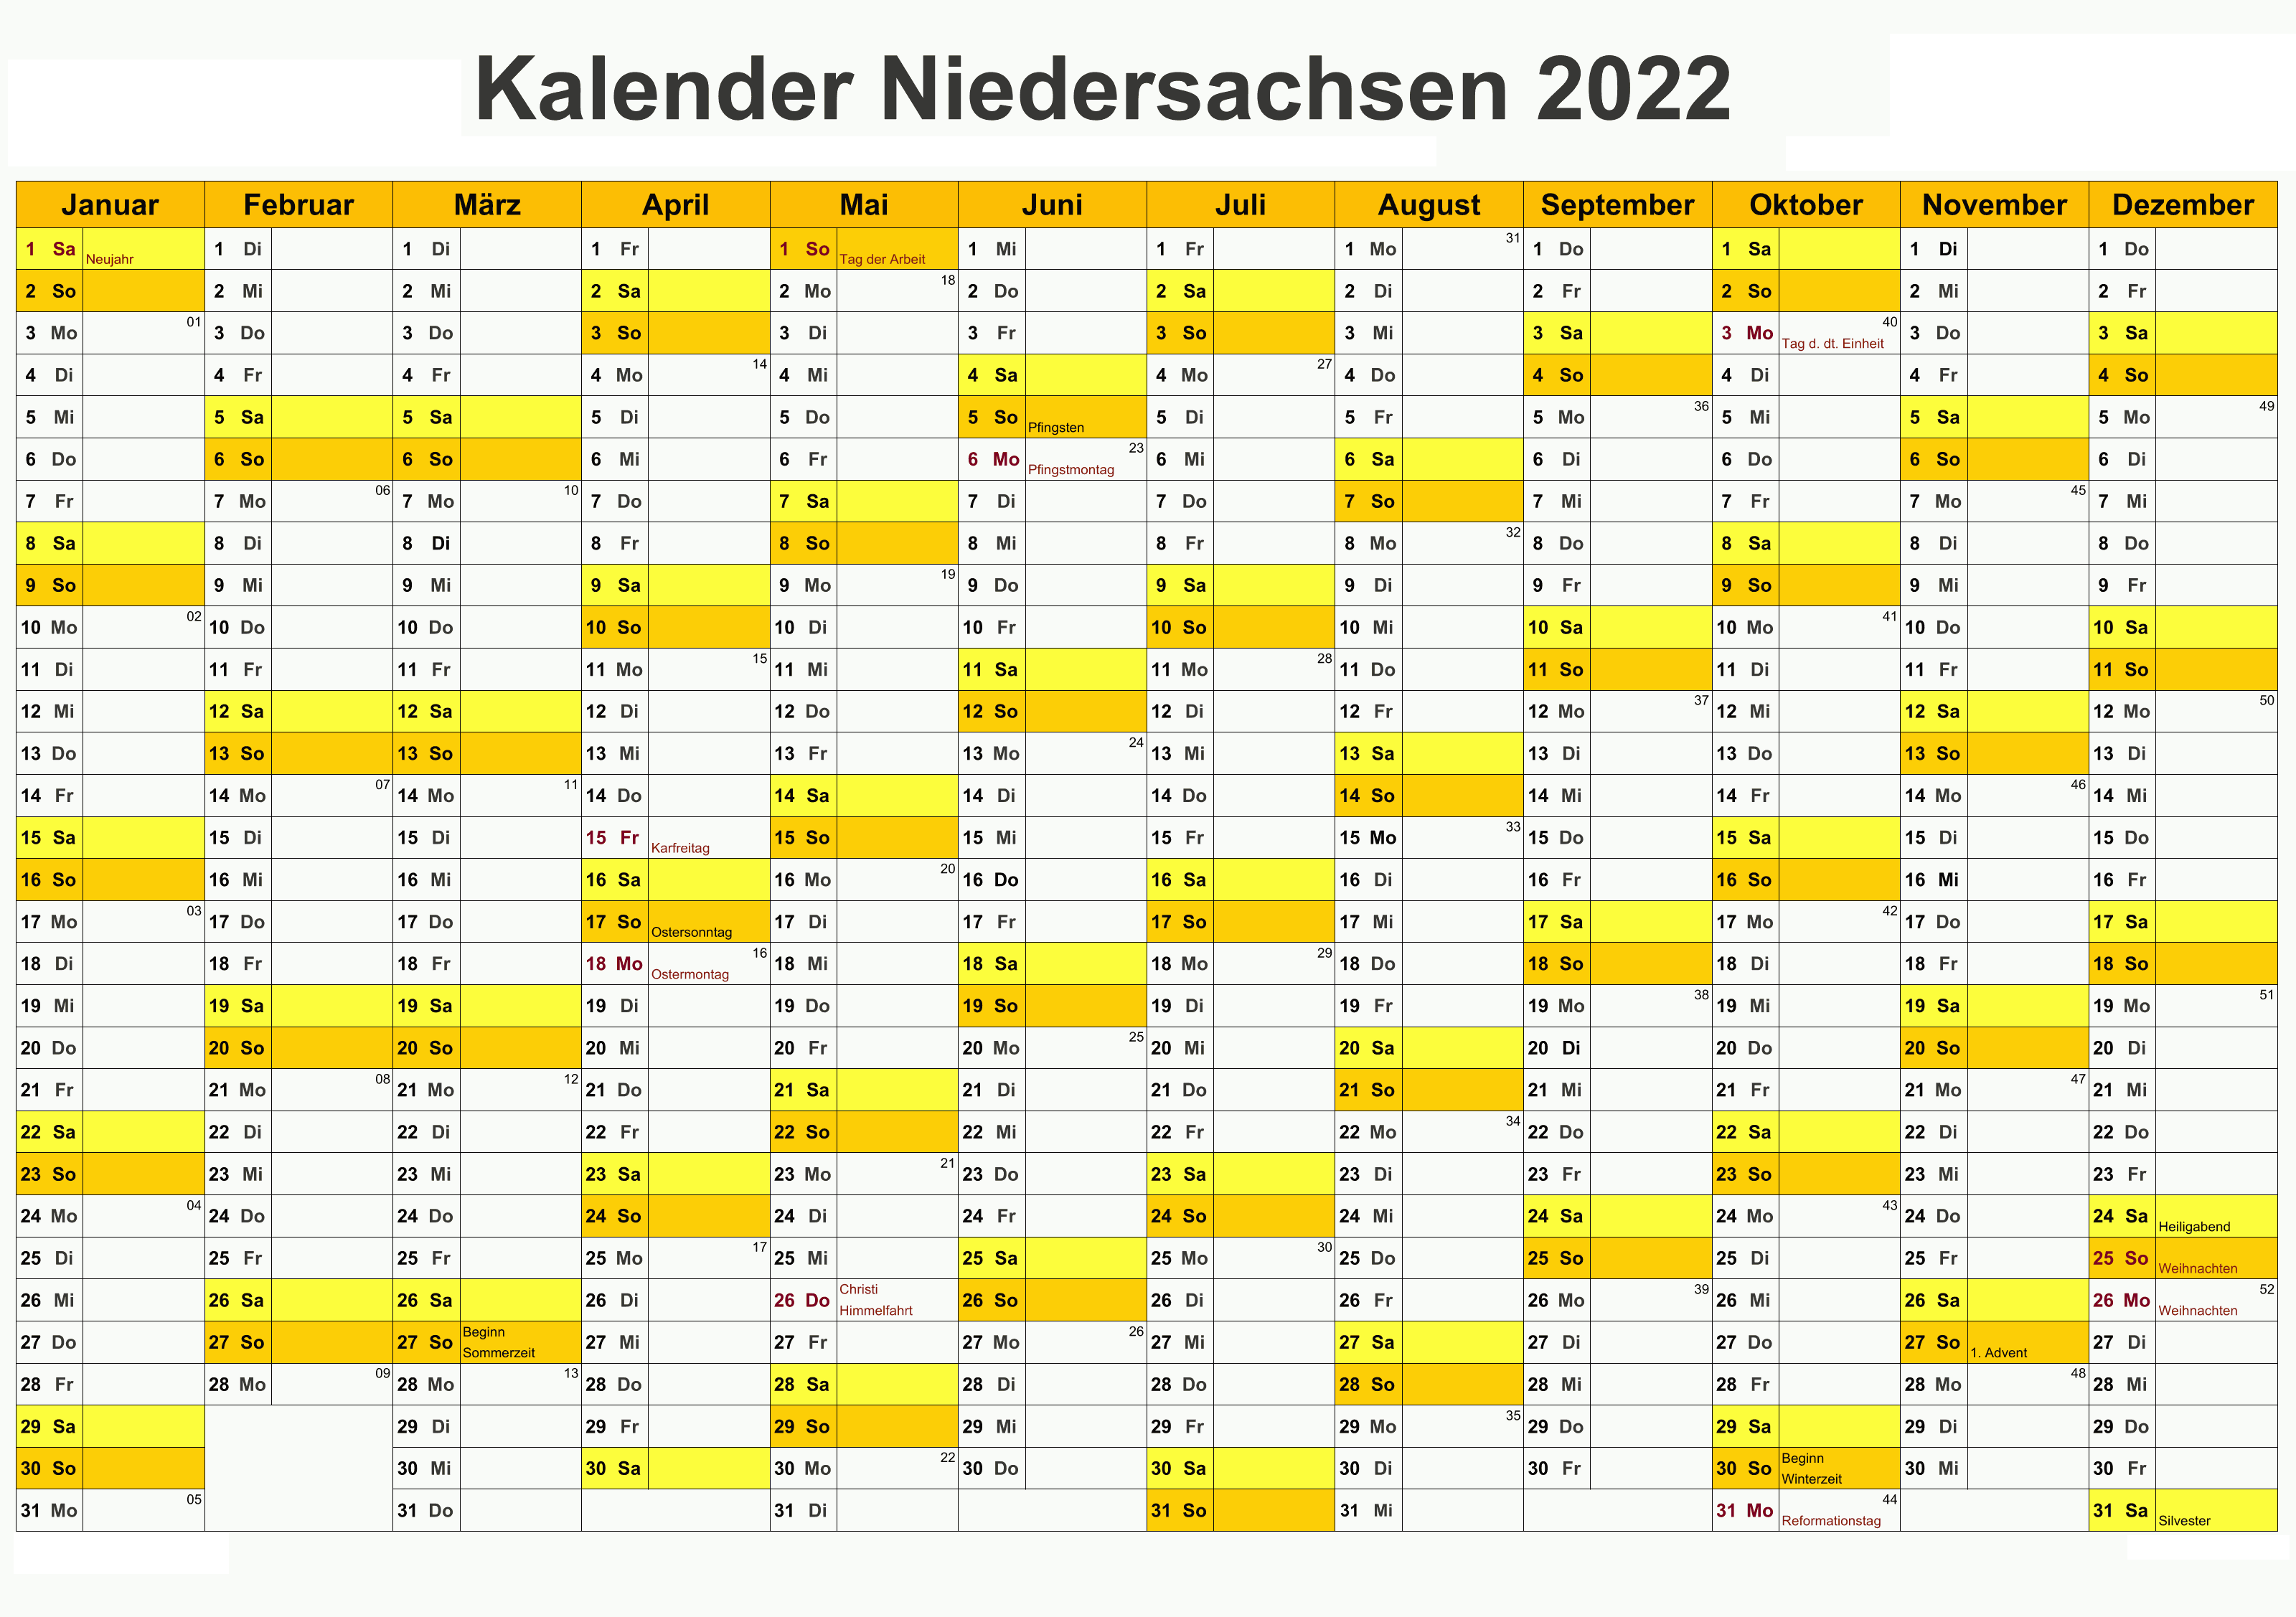 Kalender Niedersachsen 2022 Zum Ausdrucken